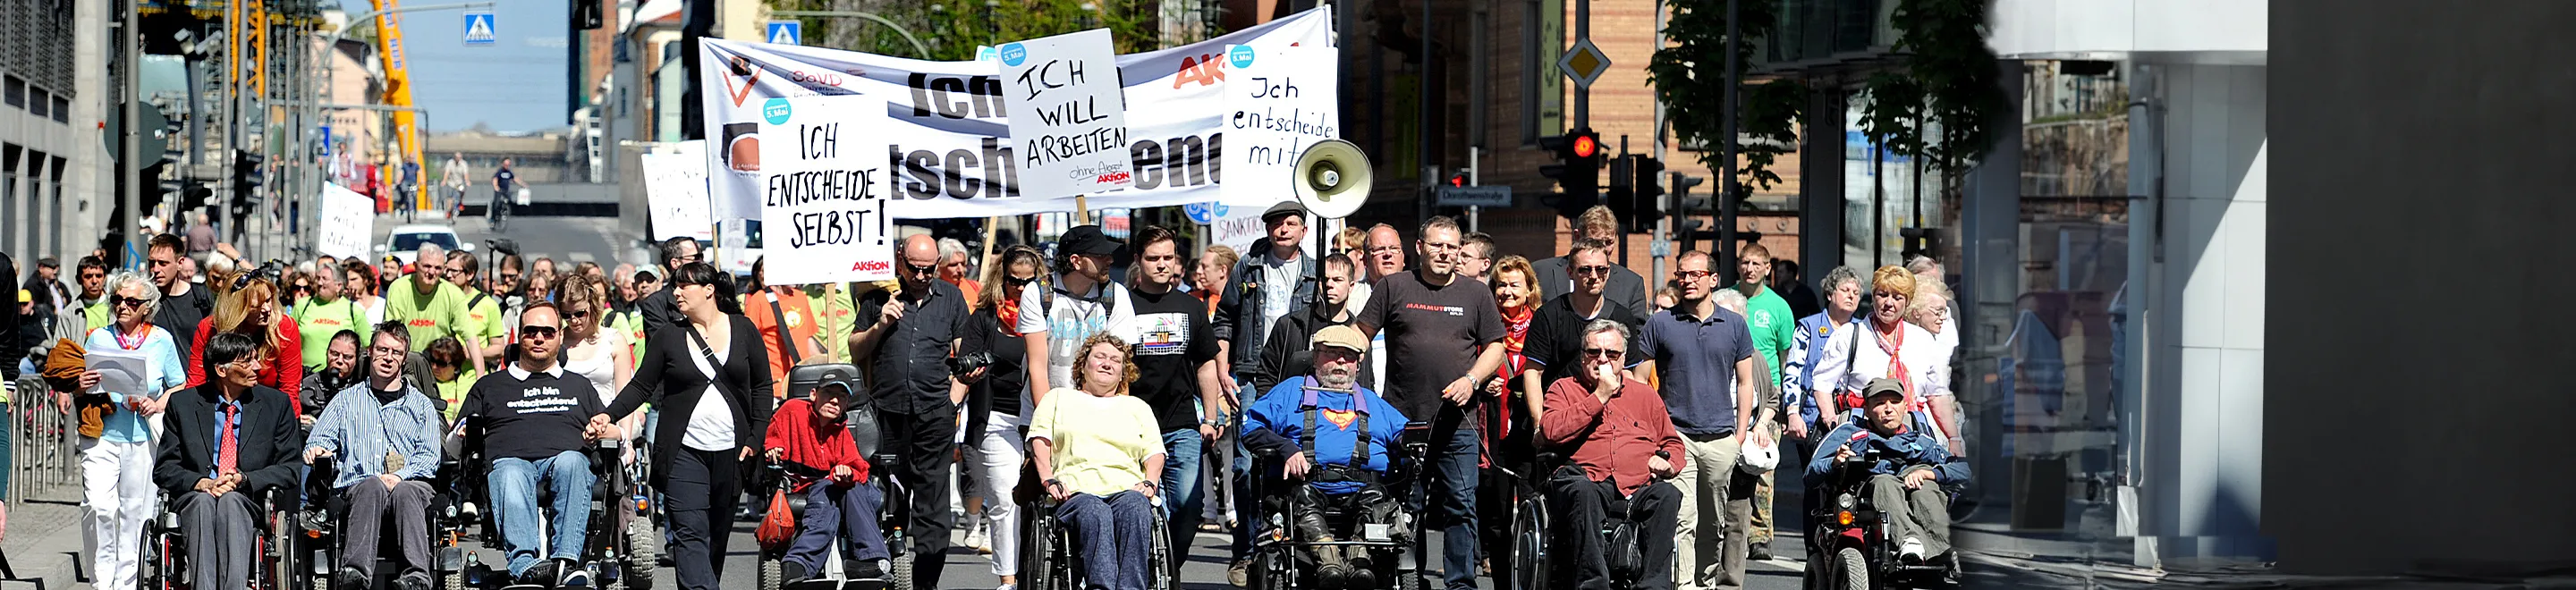 Zahlreiche Menschen mit und ohne Behinderung bei einer Demo